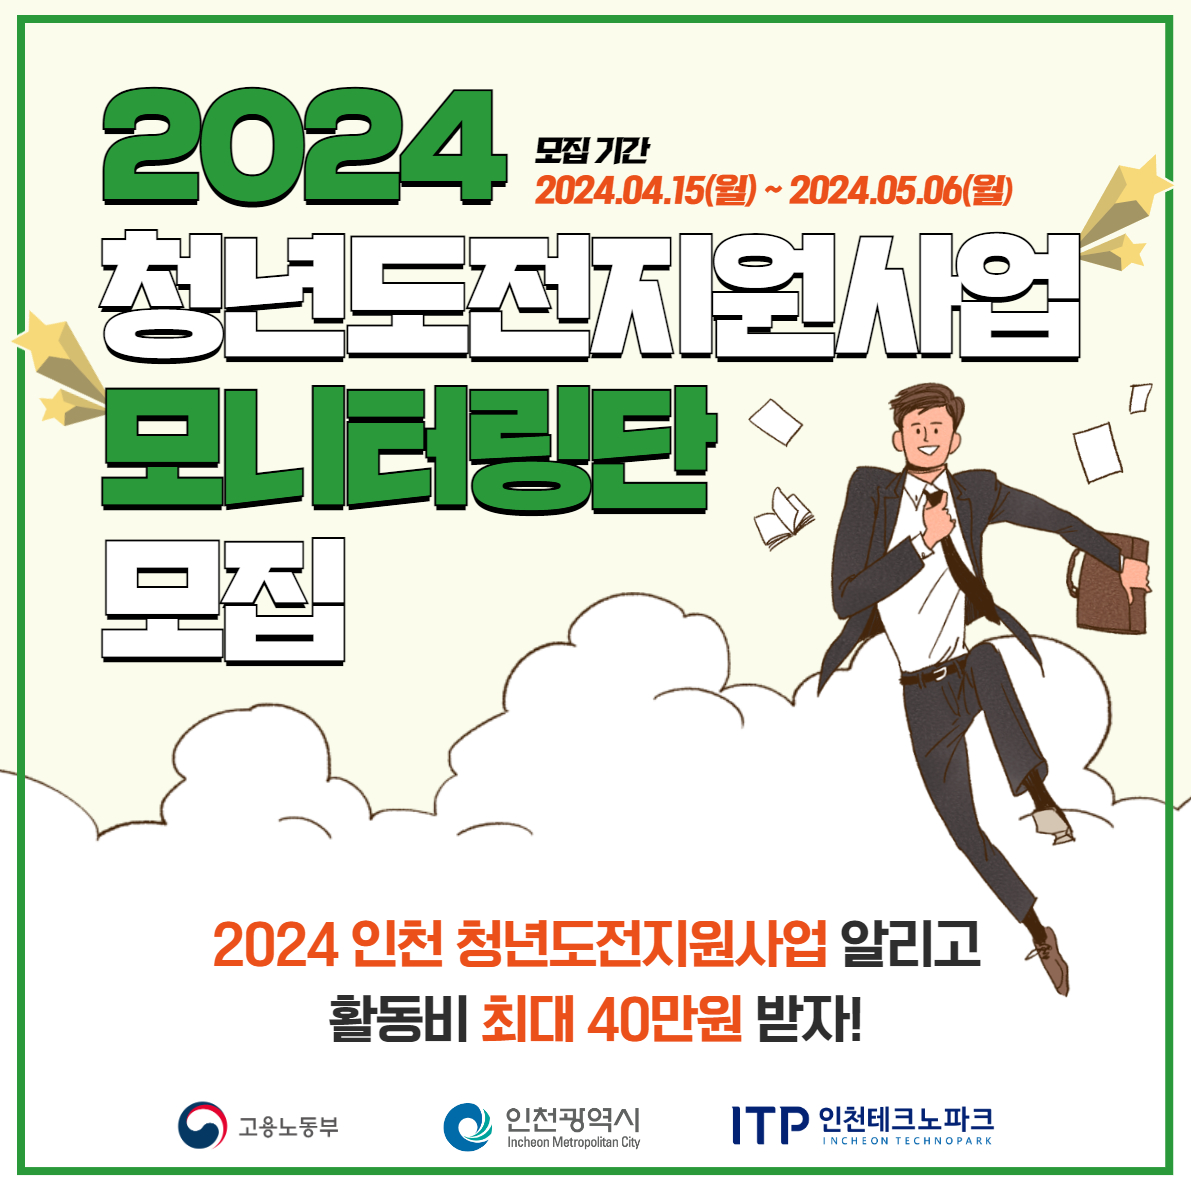 2024 모니터링단 모집